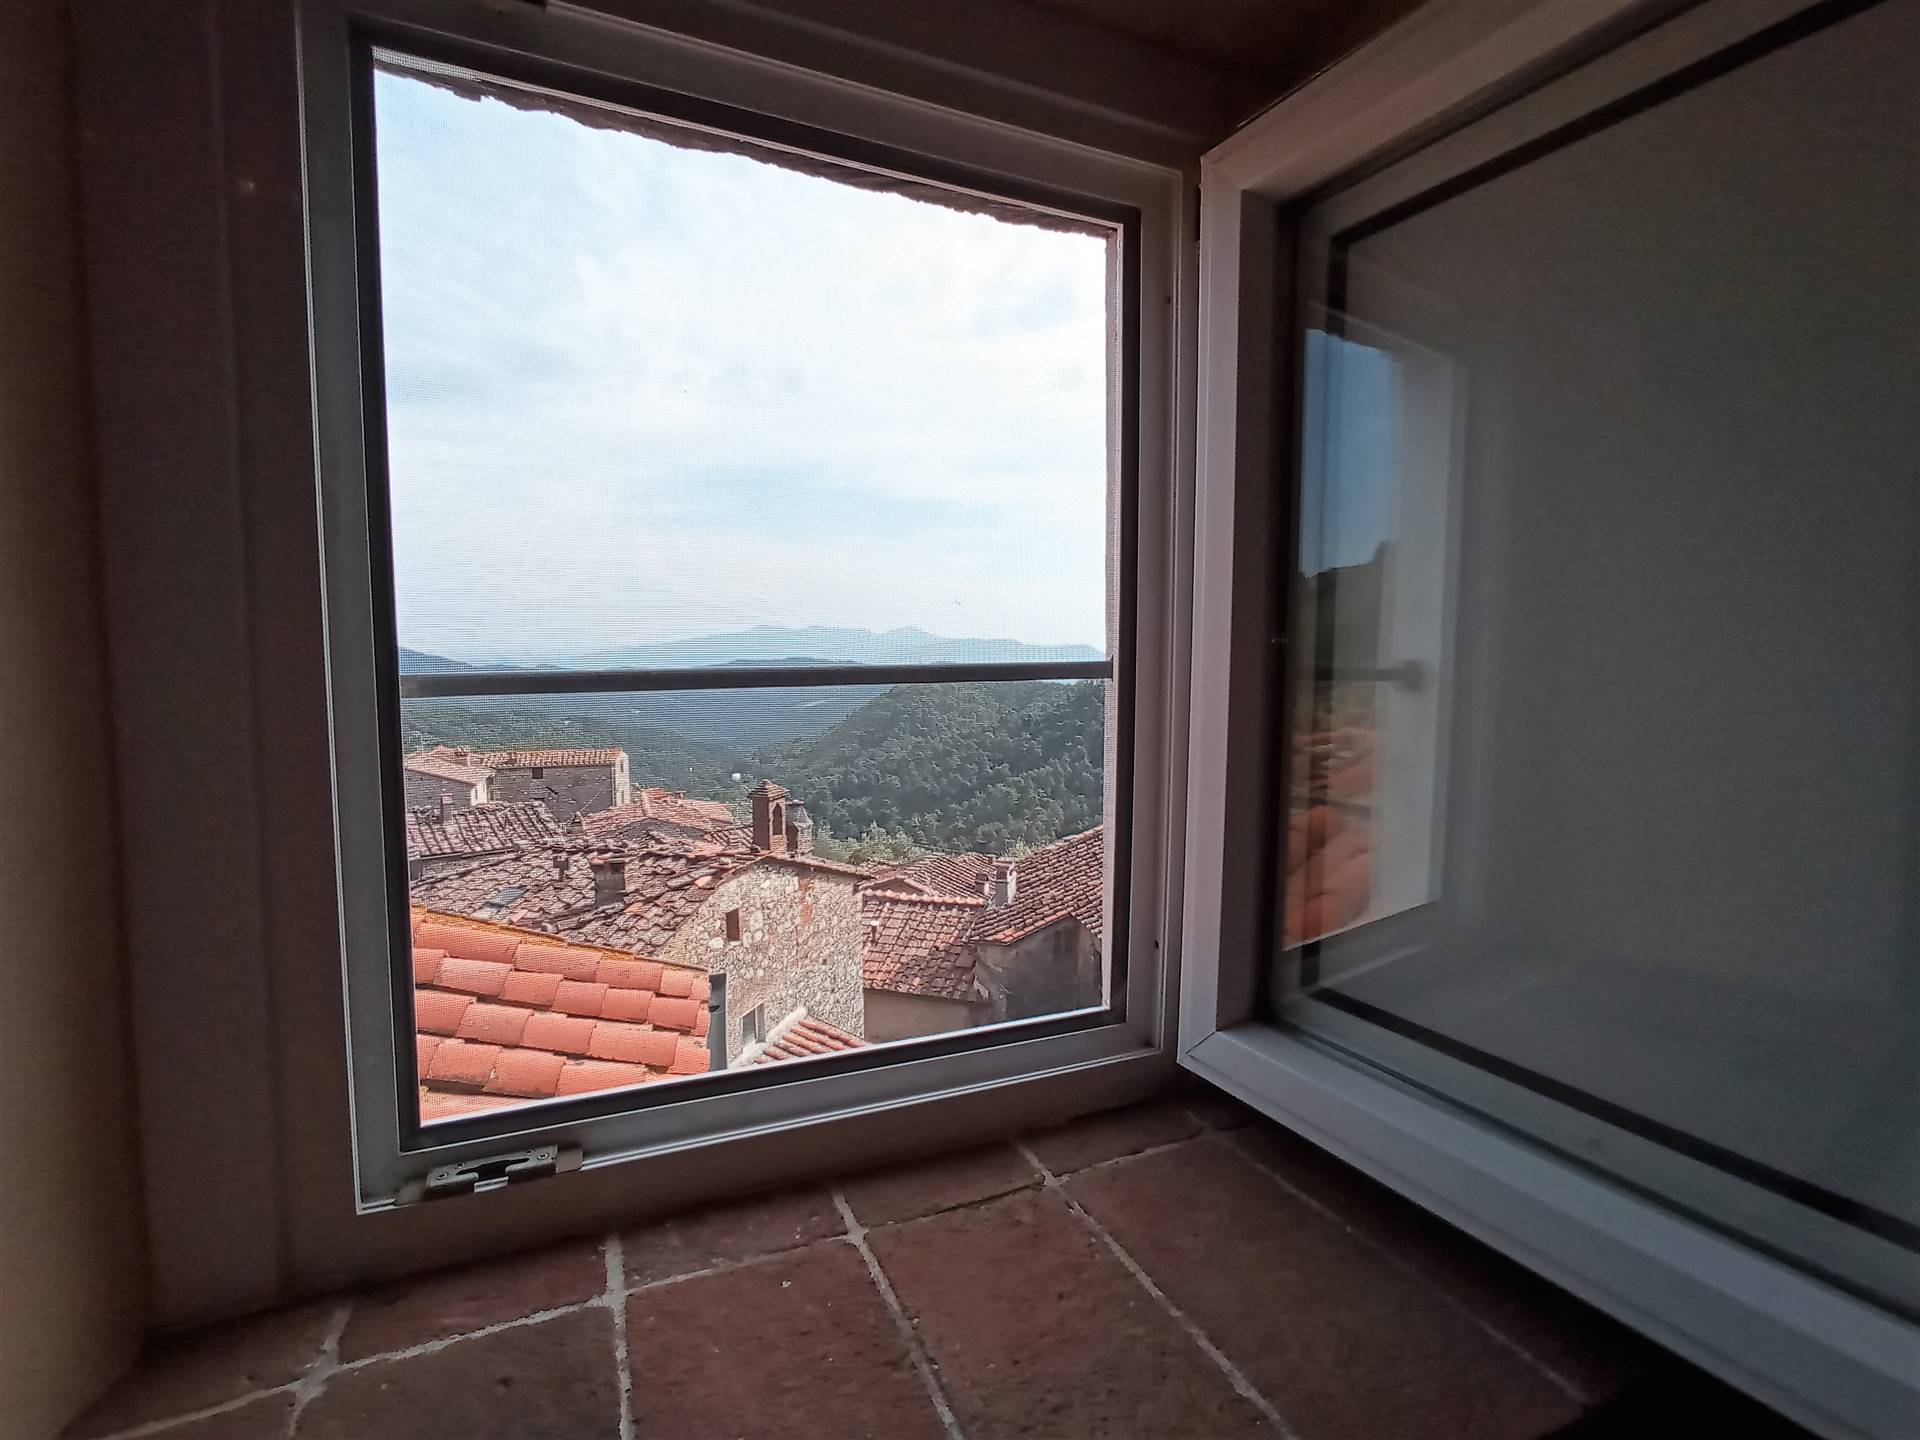 La vista sul borgo - The view over the village